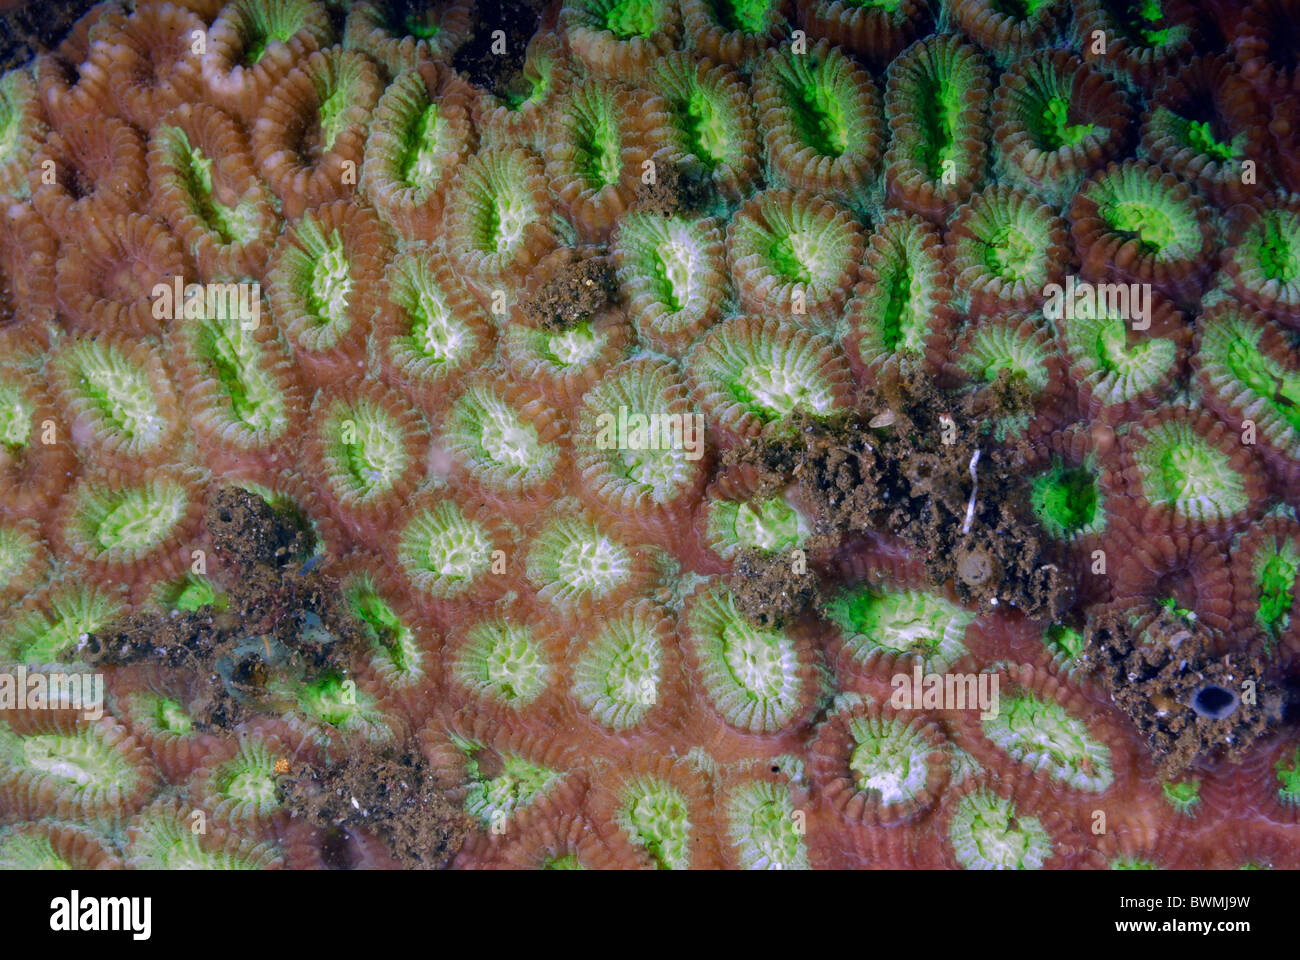 Brain coral Favia sp., Tulamben, Bali, Indonesia, Indo-pacific Ocean Stock Photo